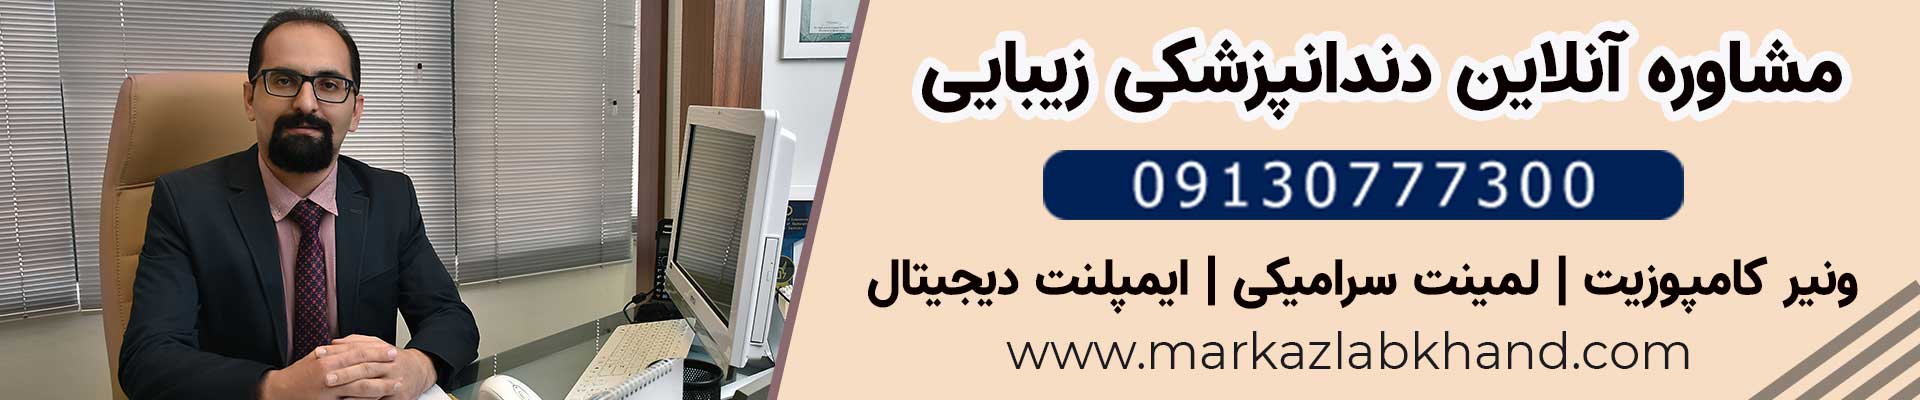 مشاوره آنلاین دندانپزشکی زیبایی در اصفهان